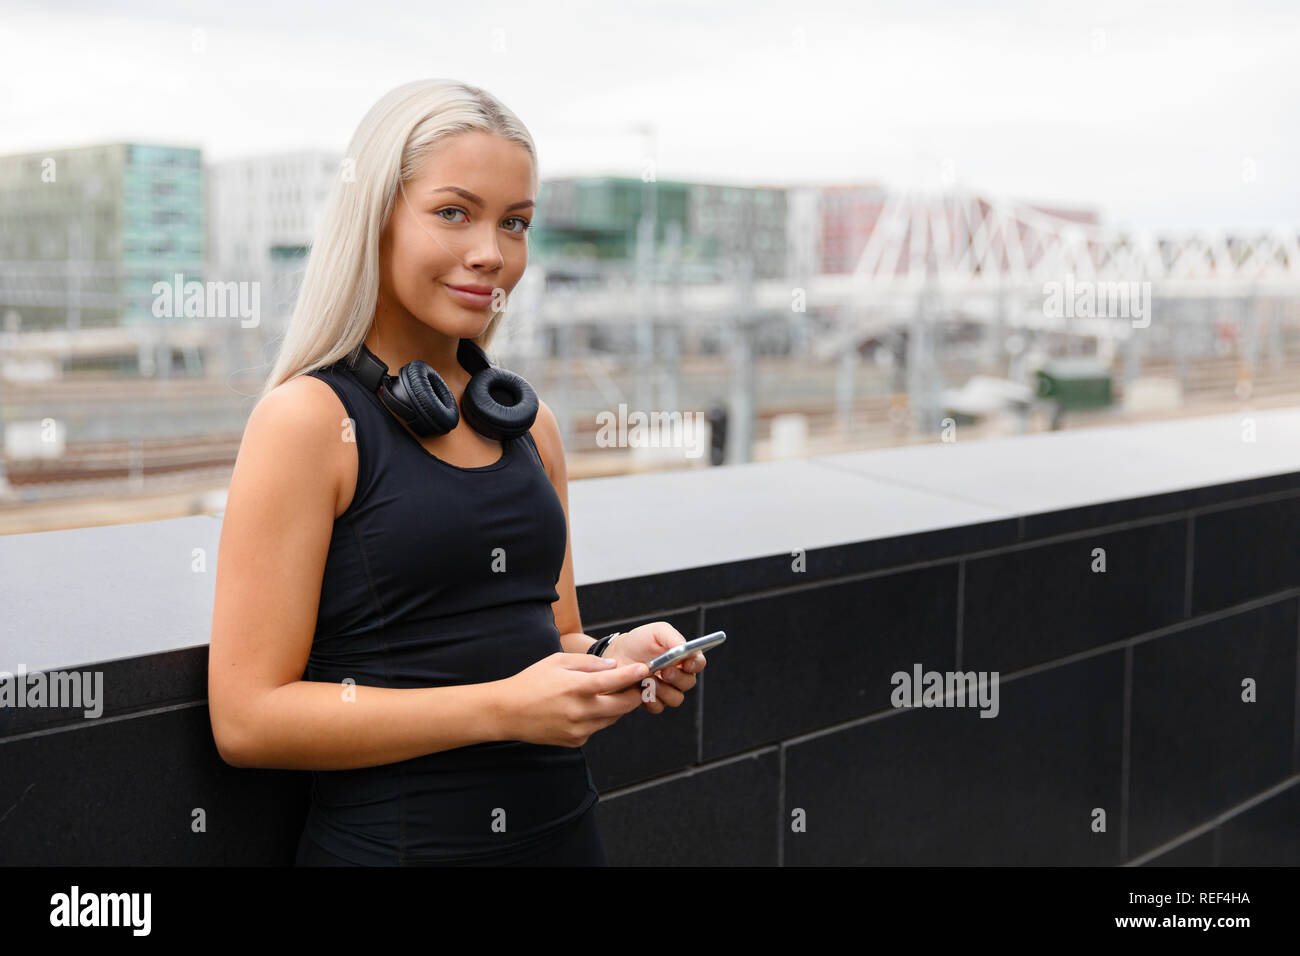 Lächelnd Passform weiblichen Athleten mit Kopfhörern und erobert In der Stadt Stockfoto